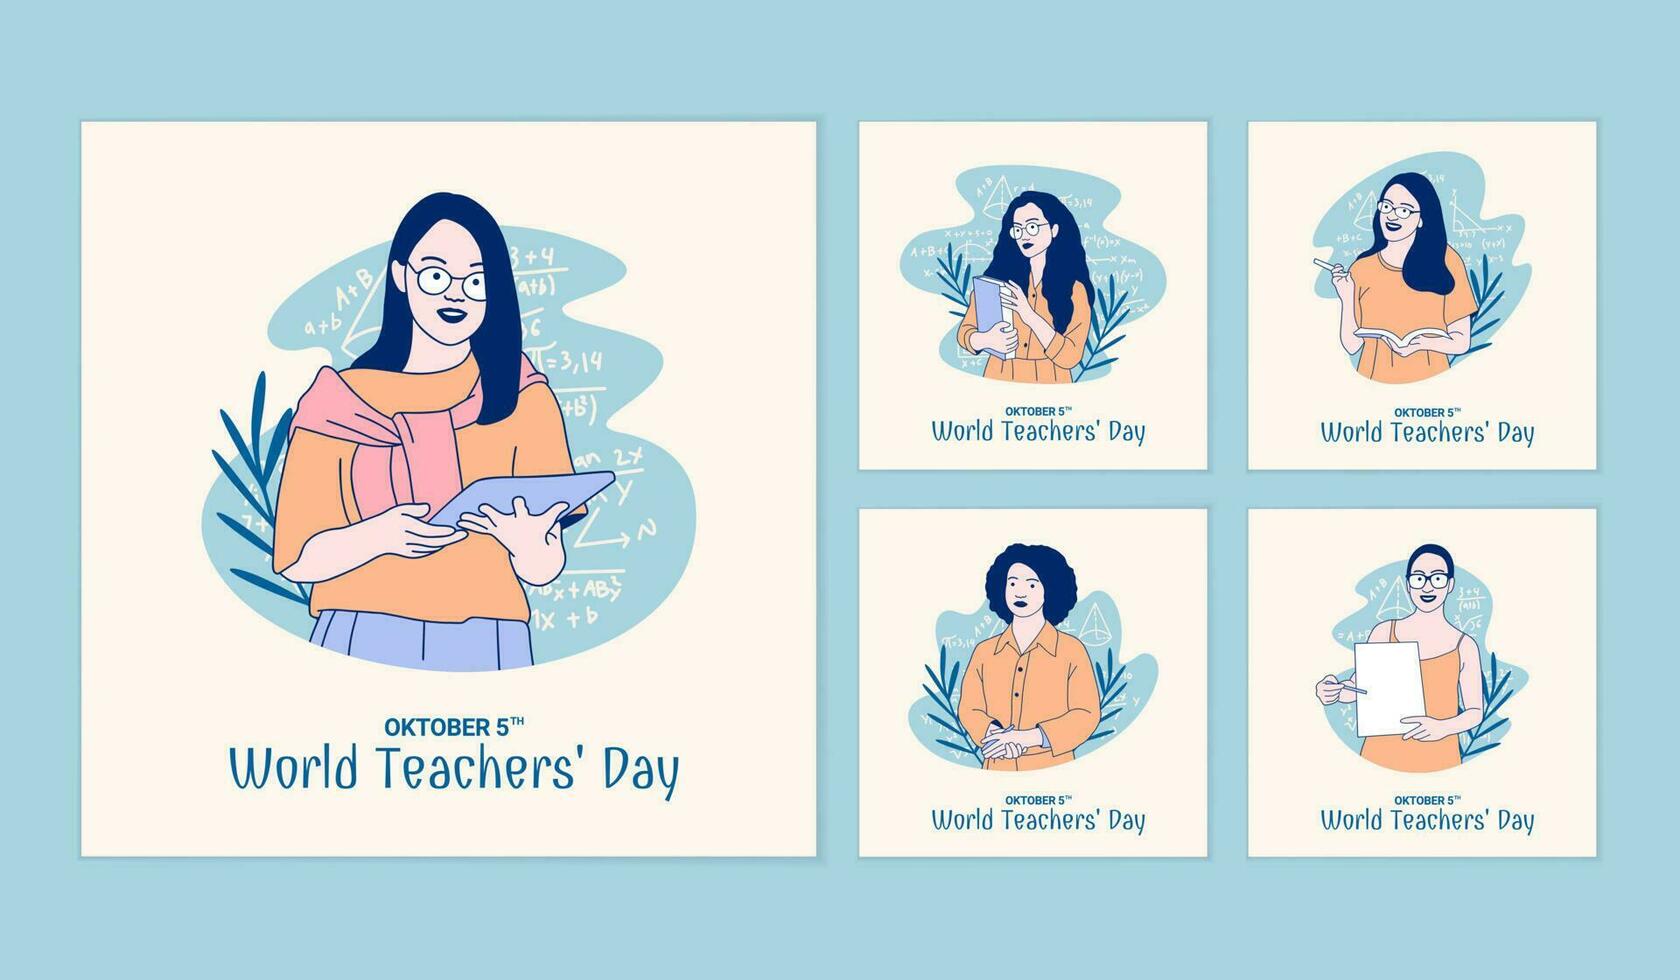 illustrationer av skön kvinna lärare för värld lärares dag social media inlägg samling vektor